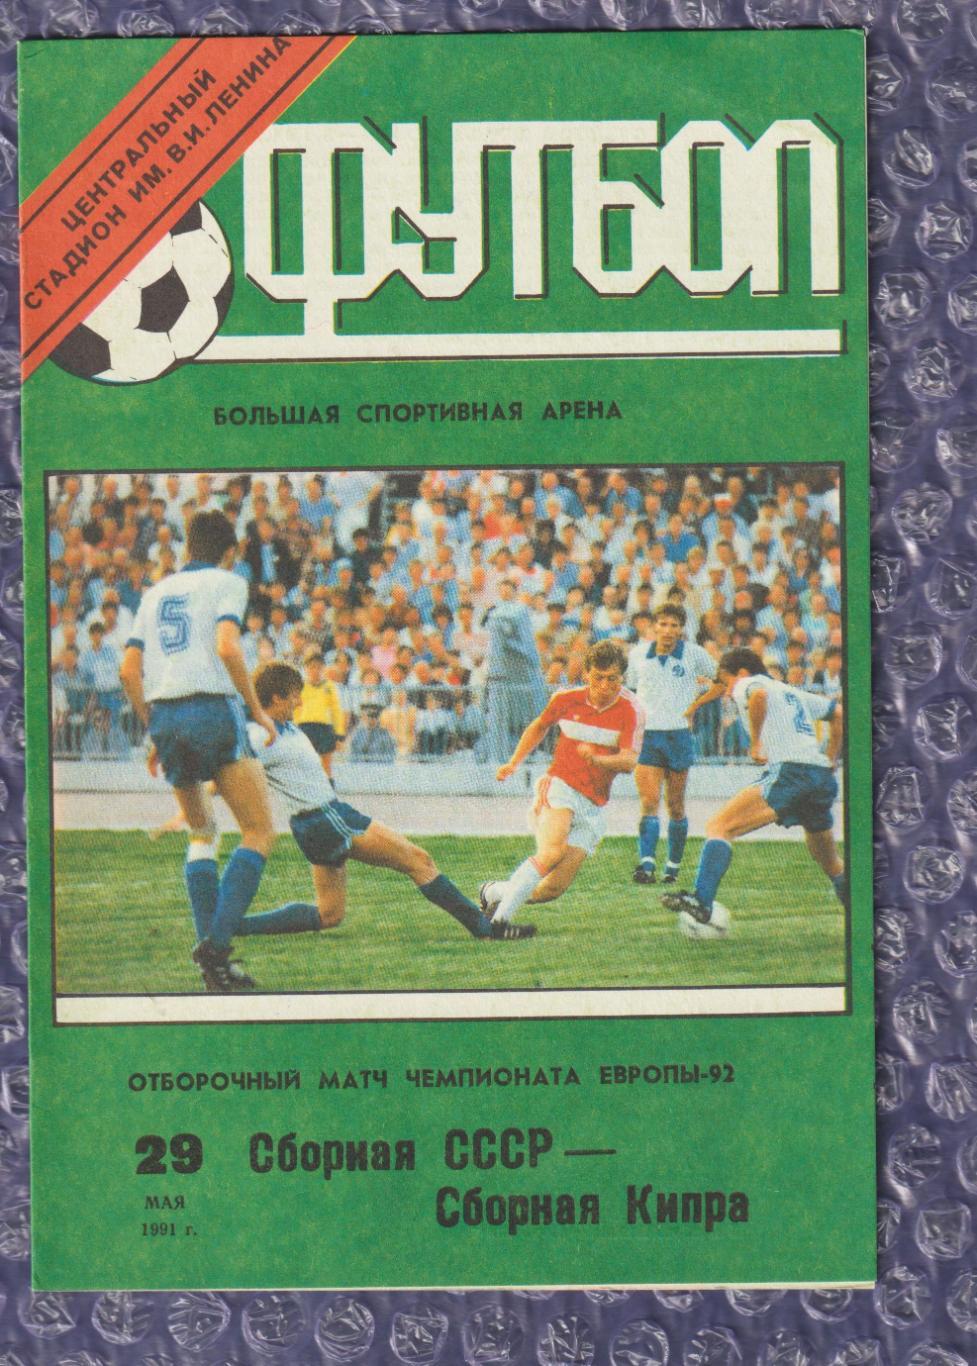 СРСР - Кіпр 29.05.1991